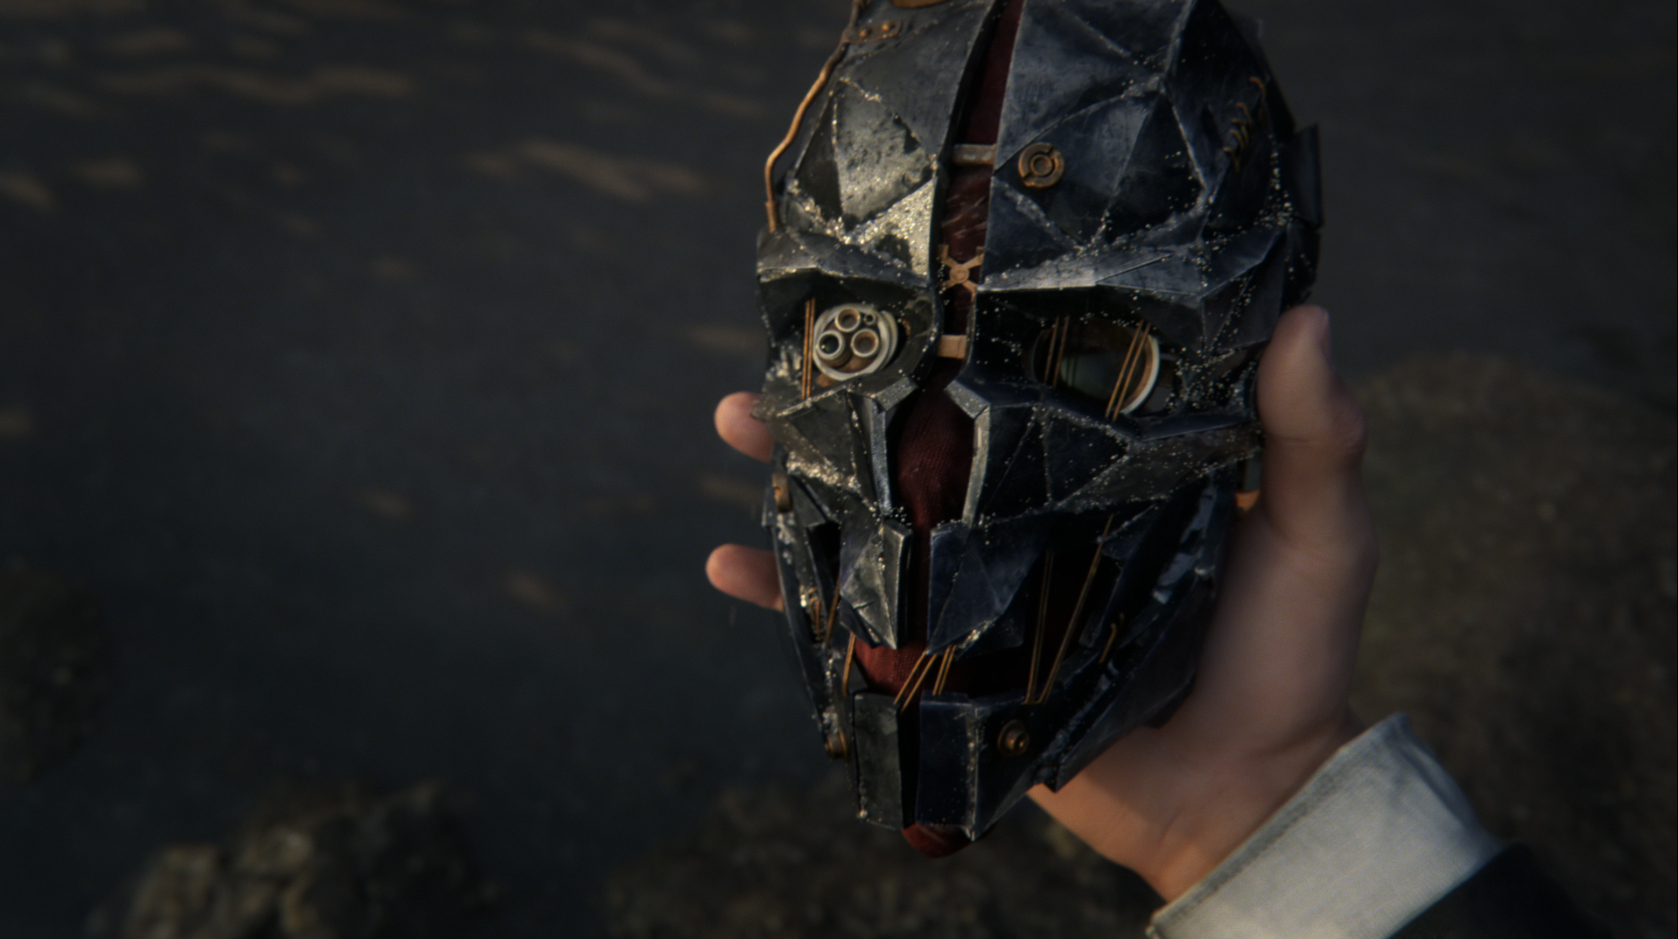 [E3 2015] Ecco le prime immagini e alcuni dettagli su Dishonored 2